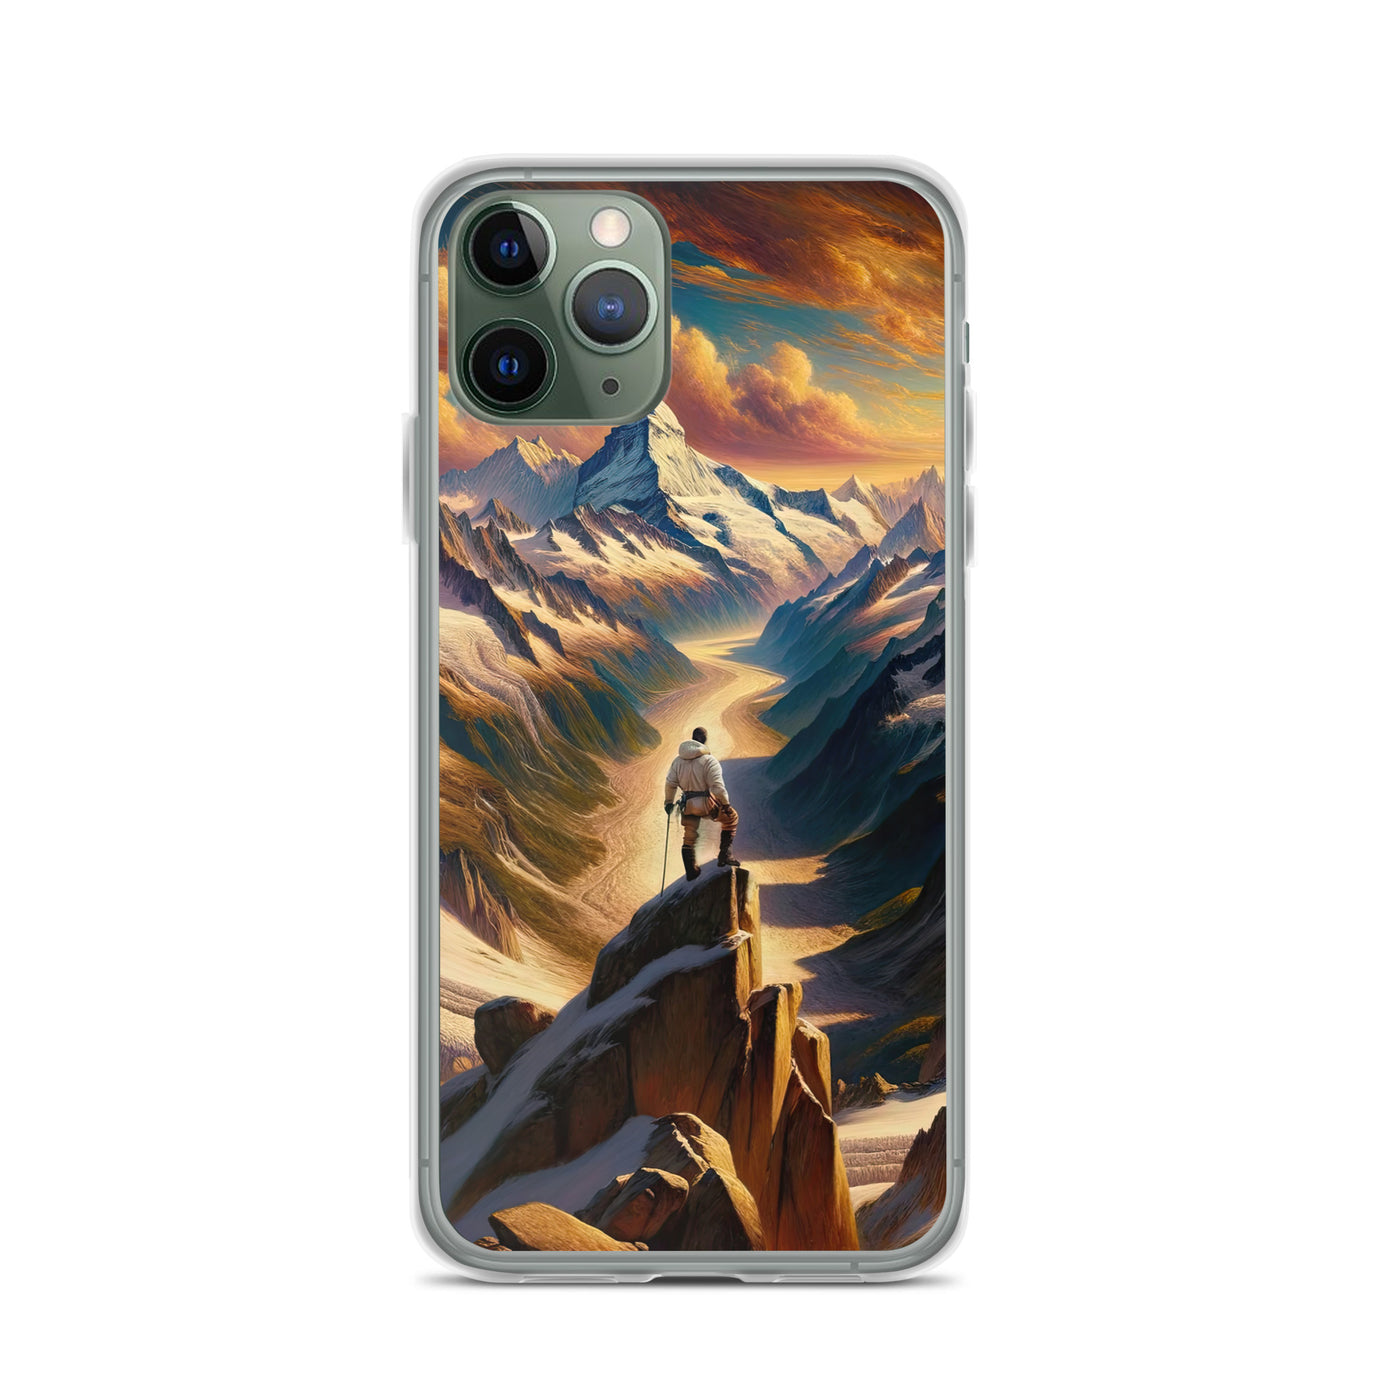 Ölgemälde eines Wanderers auf einem Hügel mit Panoramablick auf schneebedeckte Alpen und goldenen Himmel - iPhone Schutzhülle (durchsichtig) wandern xxx yyy zzz iPhone 11 Pro